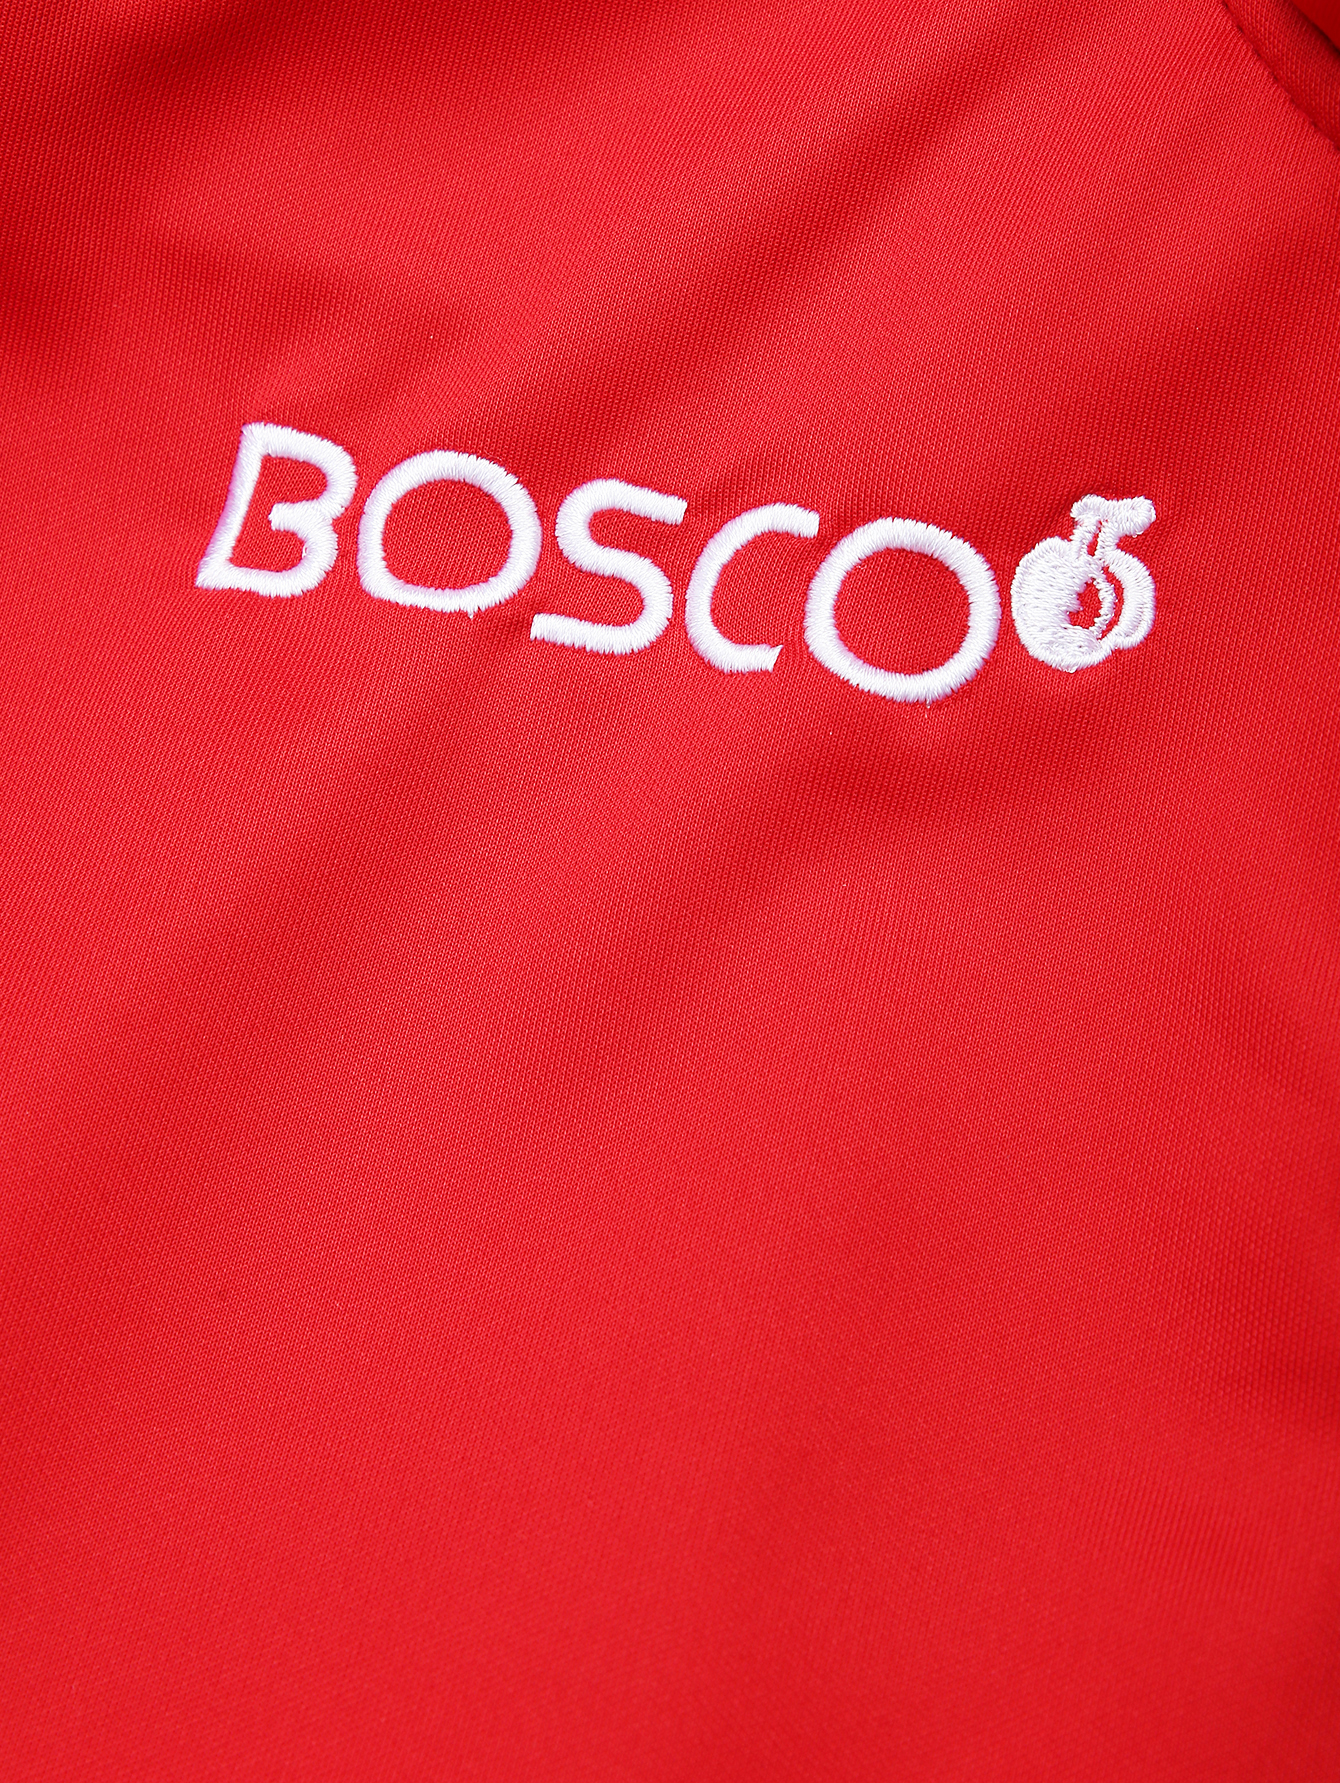 Ооо боско. Боско. Боско спортивная одежда. Логотип Боско спорт. Bosco спортивный костюм.